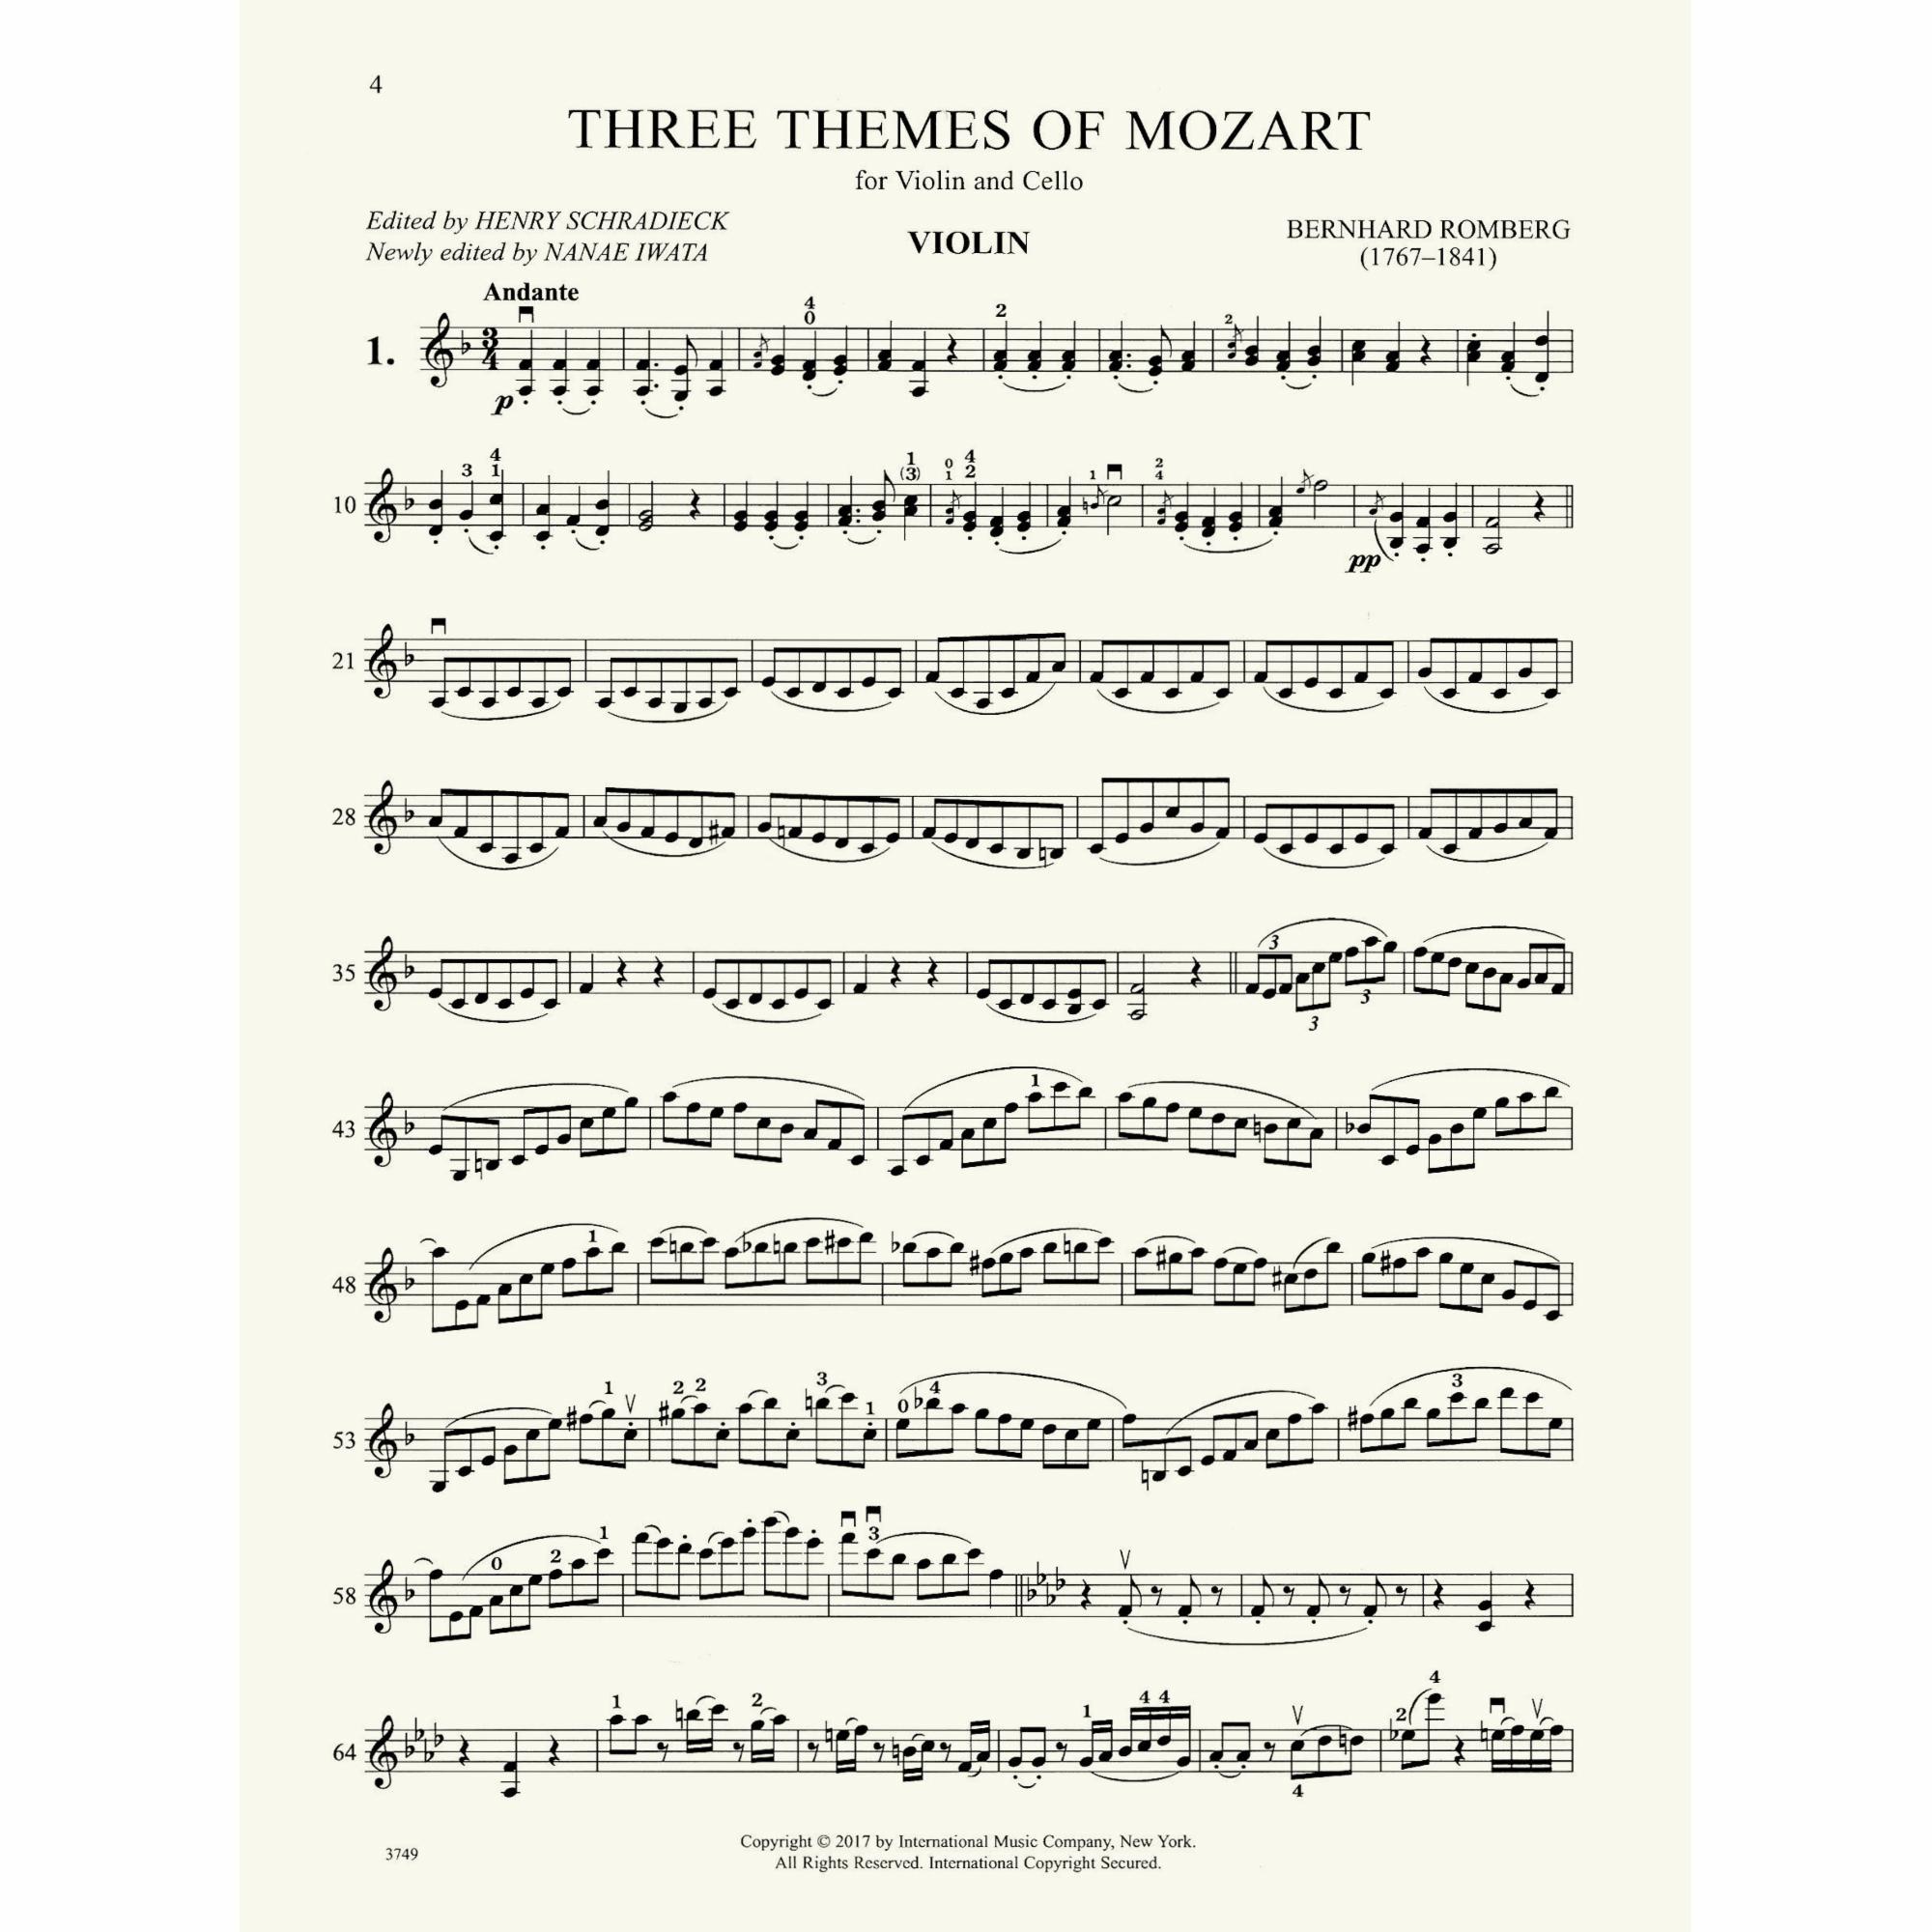 Sample: Violin (Pg. 4)